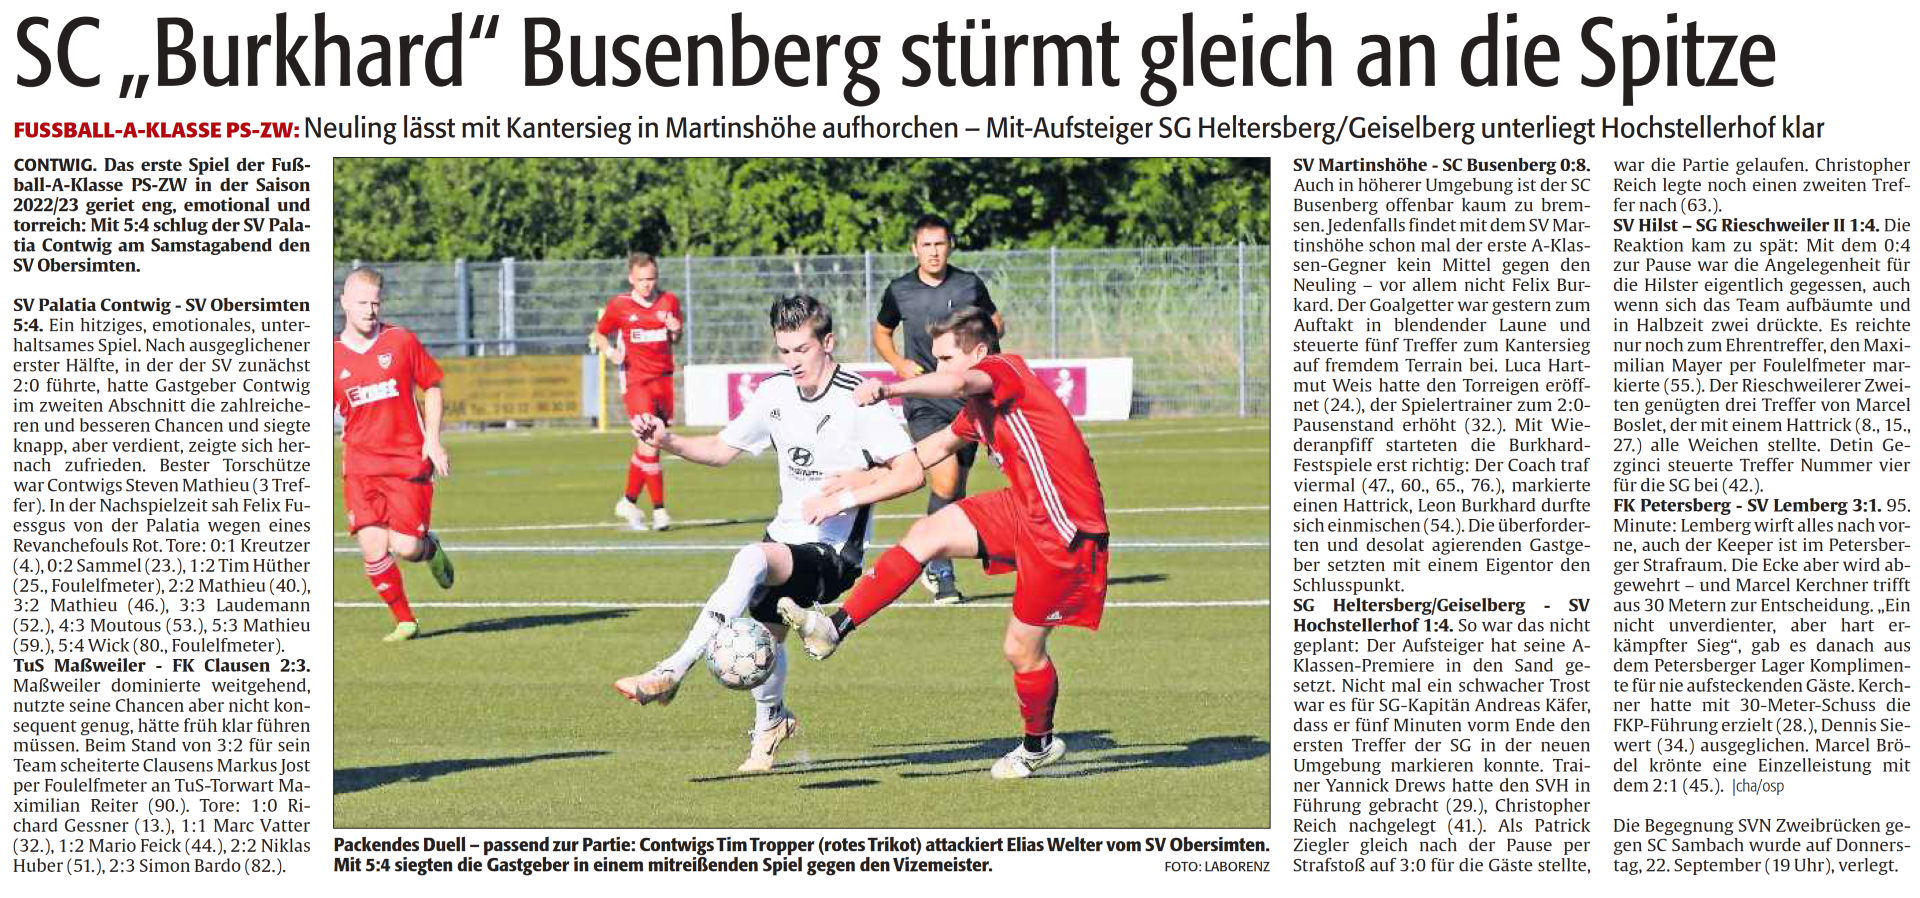 SC "Burkhard" Busenberg stürmt gleich an die Spitze